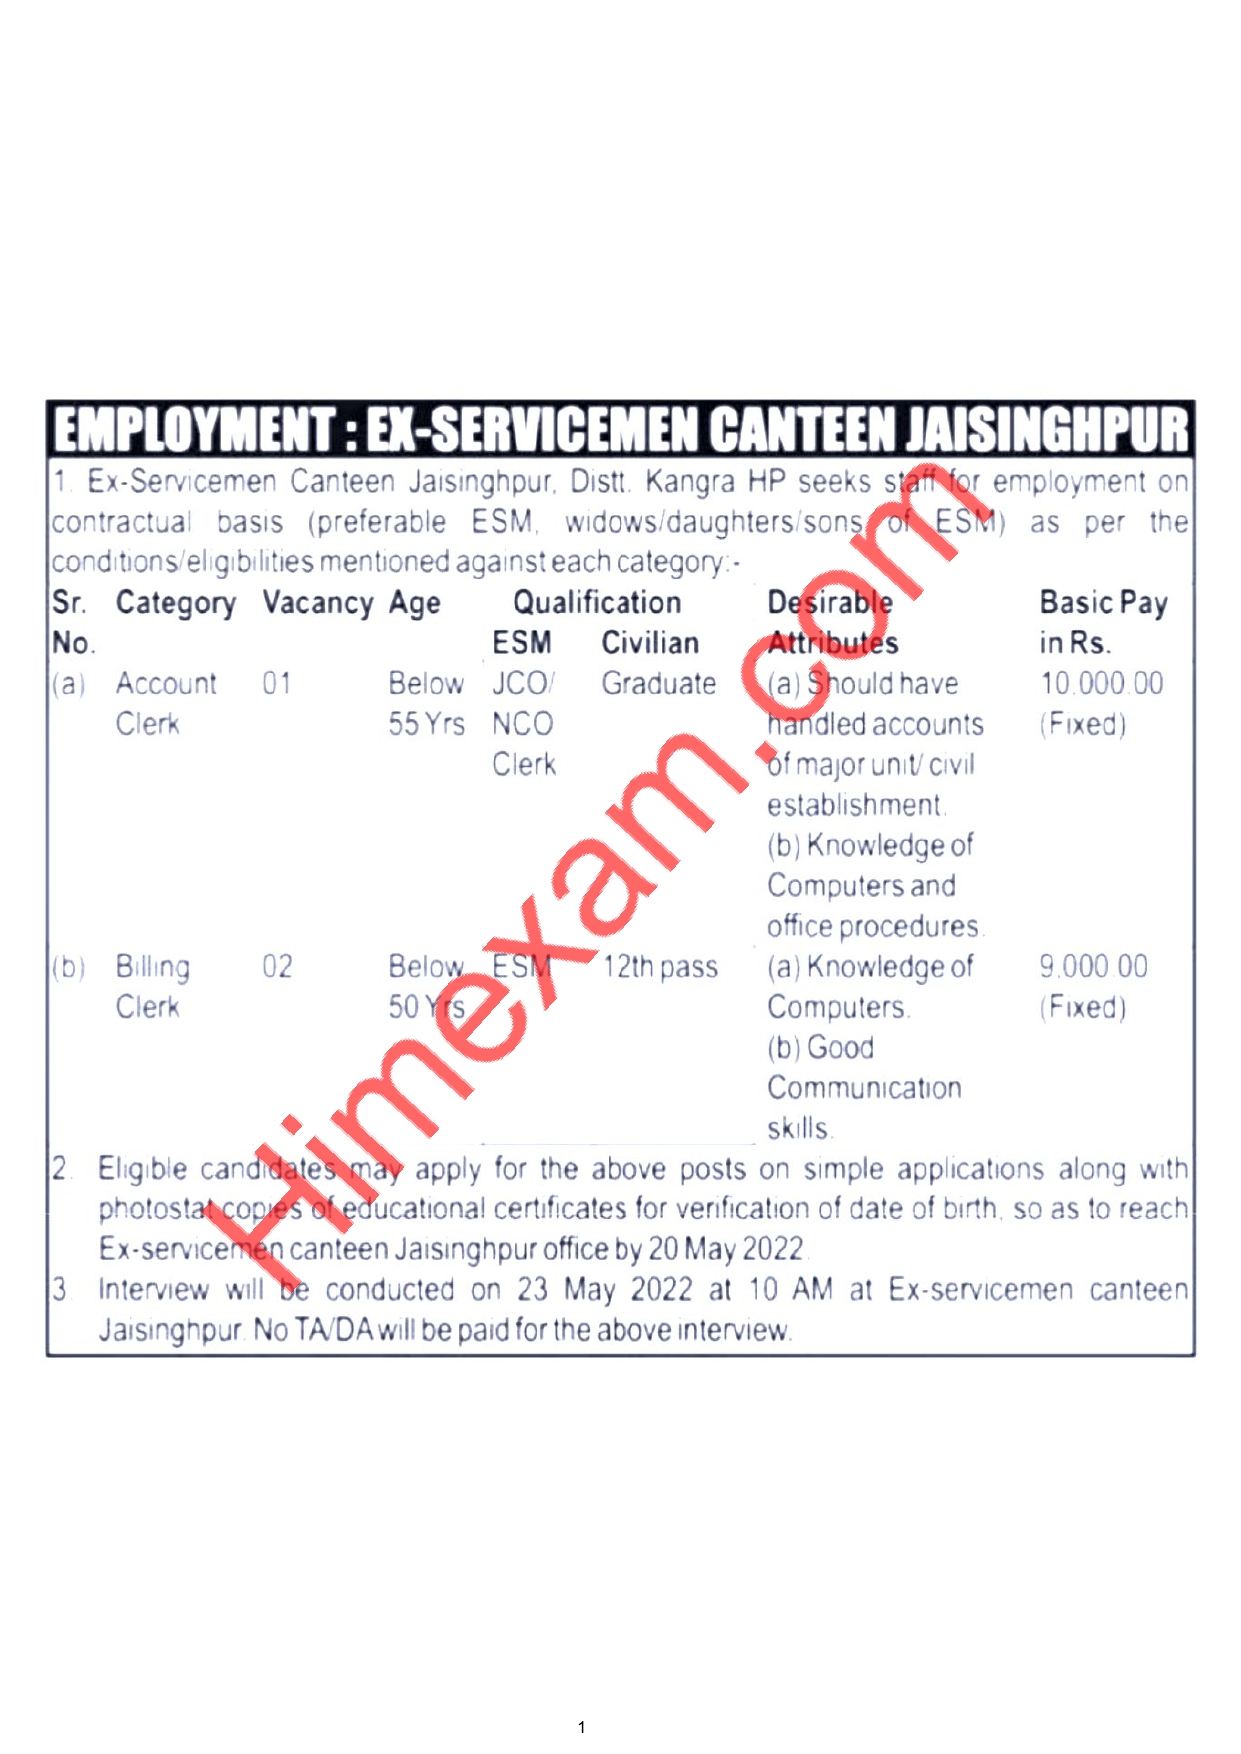 Ex-Servicemen Canteen Jaisinghpur Clerk Recruitment 2022